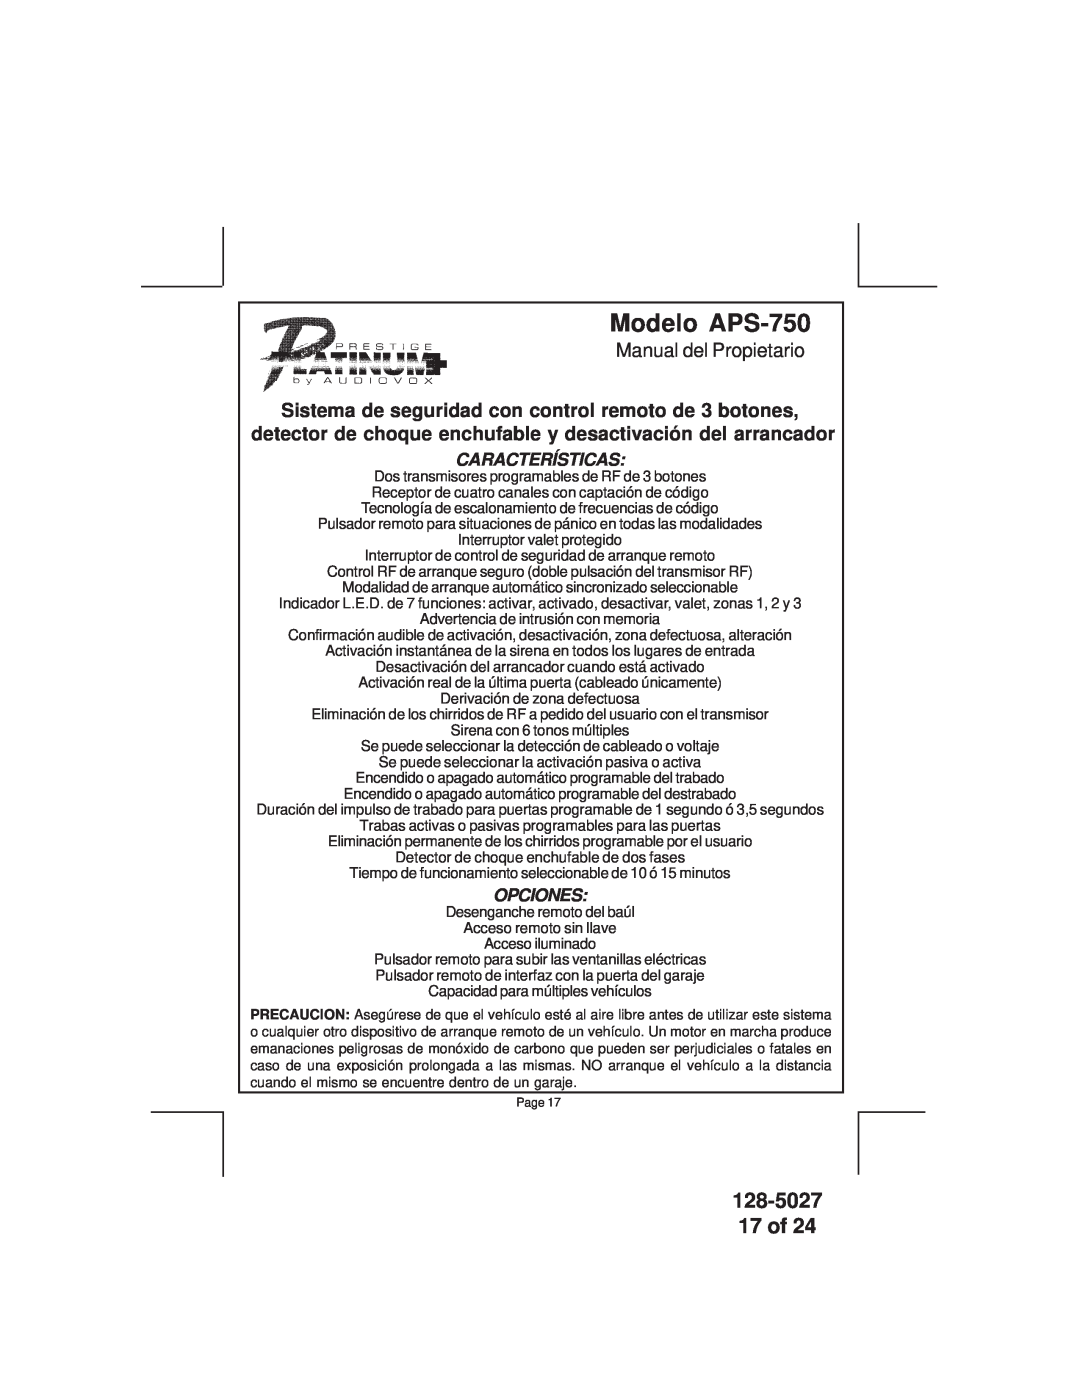 Audiovox owner manual Modelo APS-750, 128-5027 17 of, Manual del Propietario, Características, Opciones 